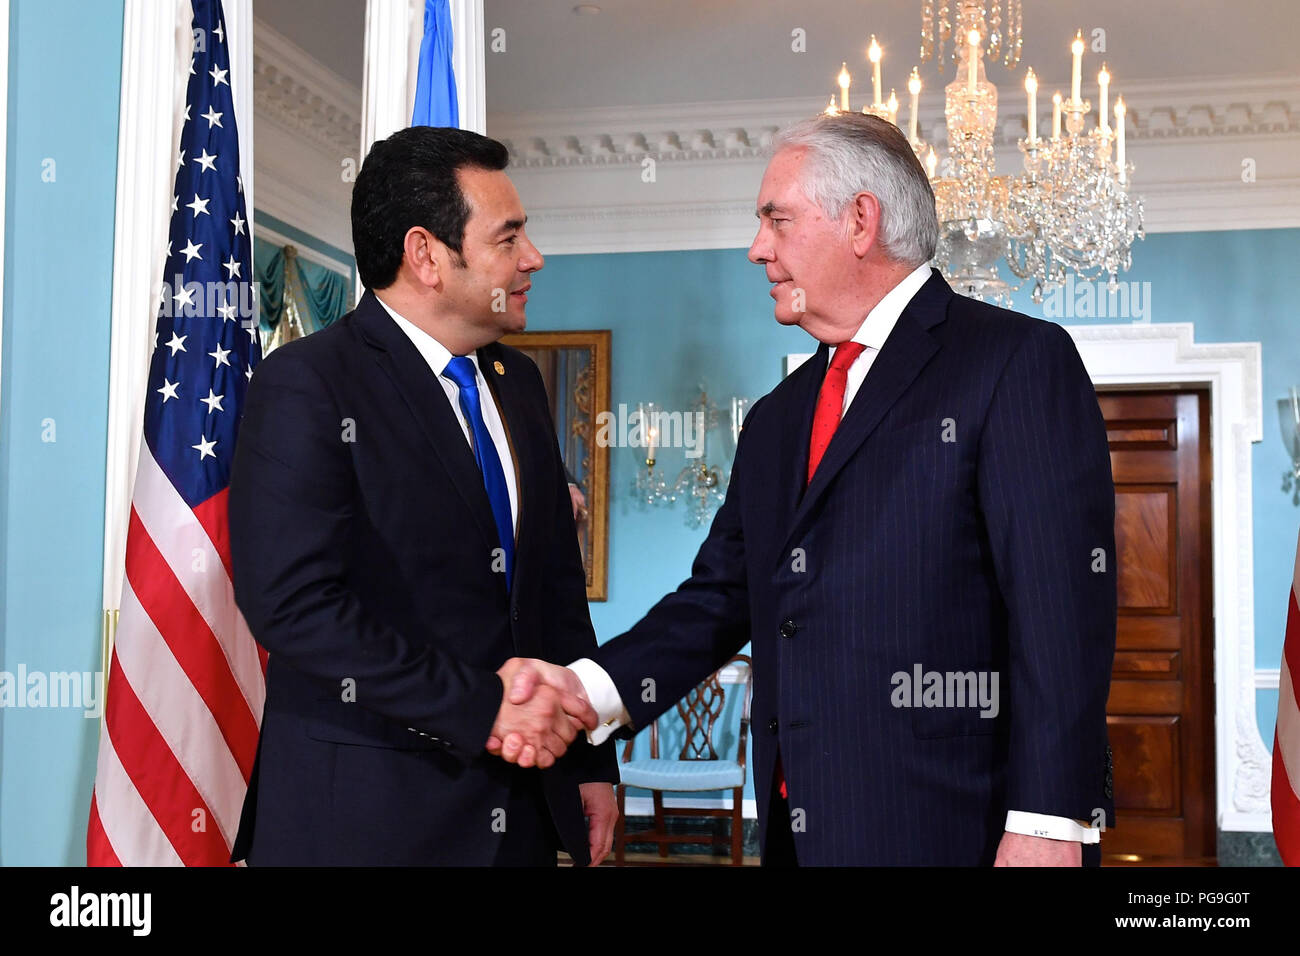 La secrétaire d'État des États-Unis, Rex Tillerson rencontre le président du Guatemala, Jimmy Morales au département d'État des États-Unis à Washington, D.C., le 8 février 2018. Banque D'Images